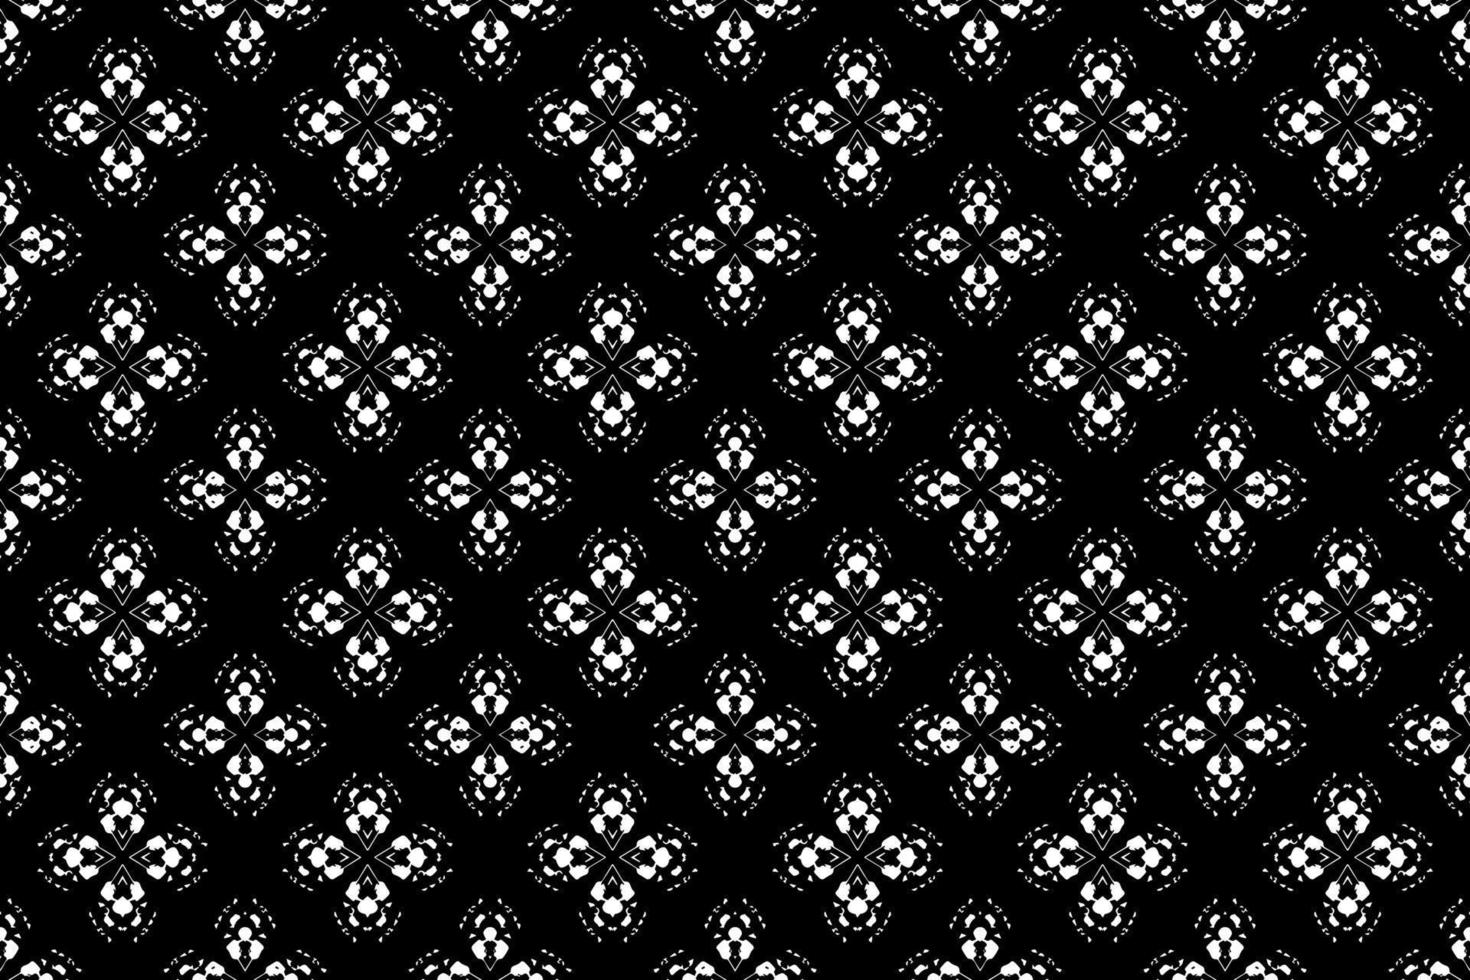 abstract naadloos patroon, naadloos behang, naadloos achtergrond ontworpen voor gebruik voor interieur, behang, kleding stof, gordijn, tapijt, kleding, batik, satijn, achtergrond, illustratie, borduurwerk stijl vector